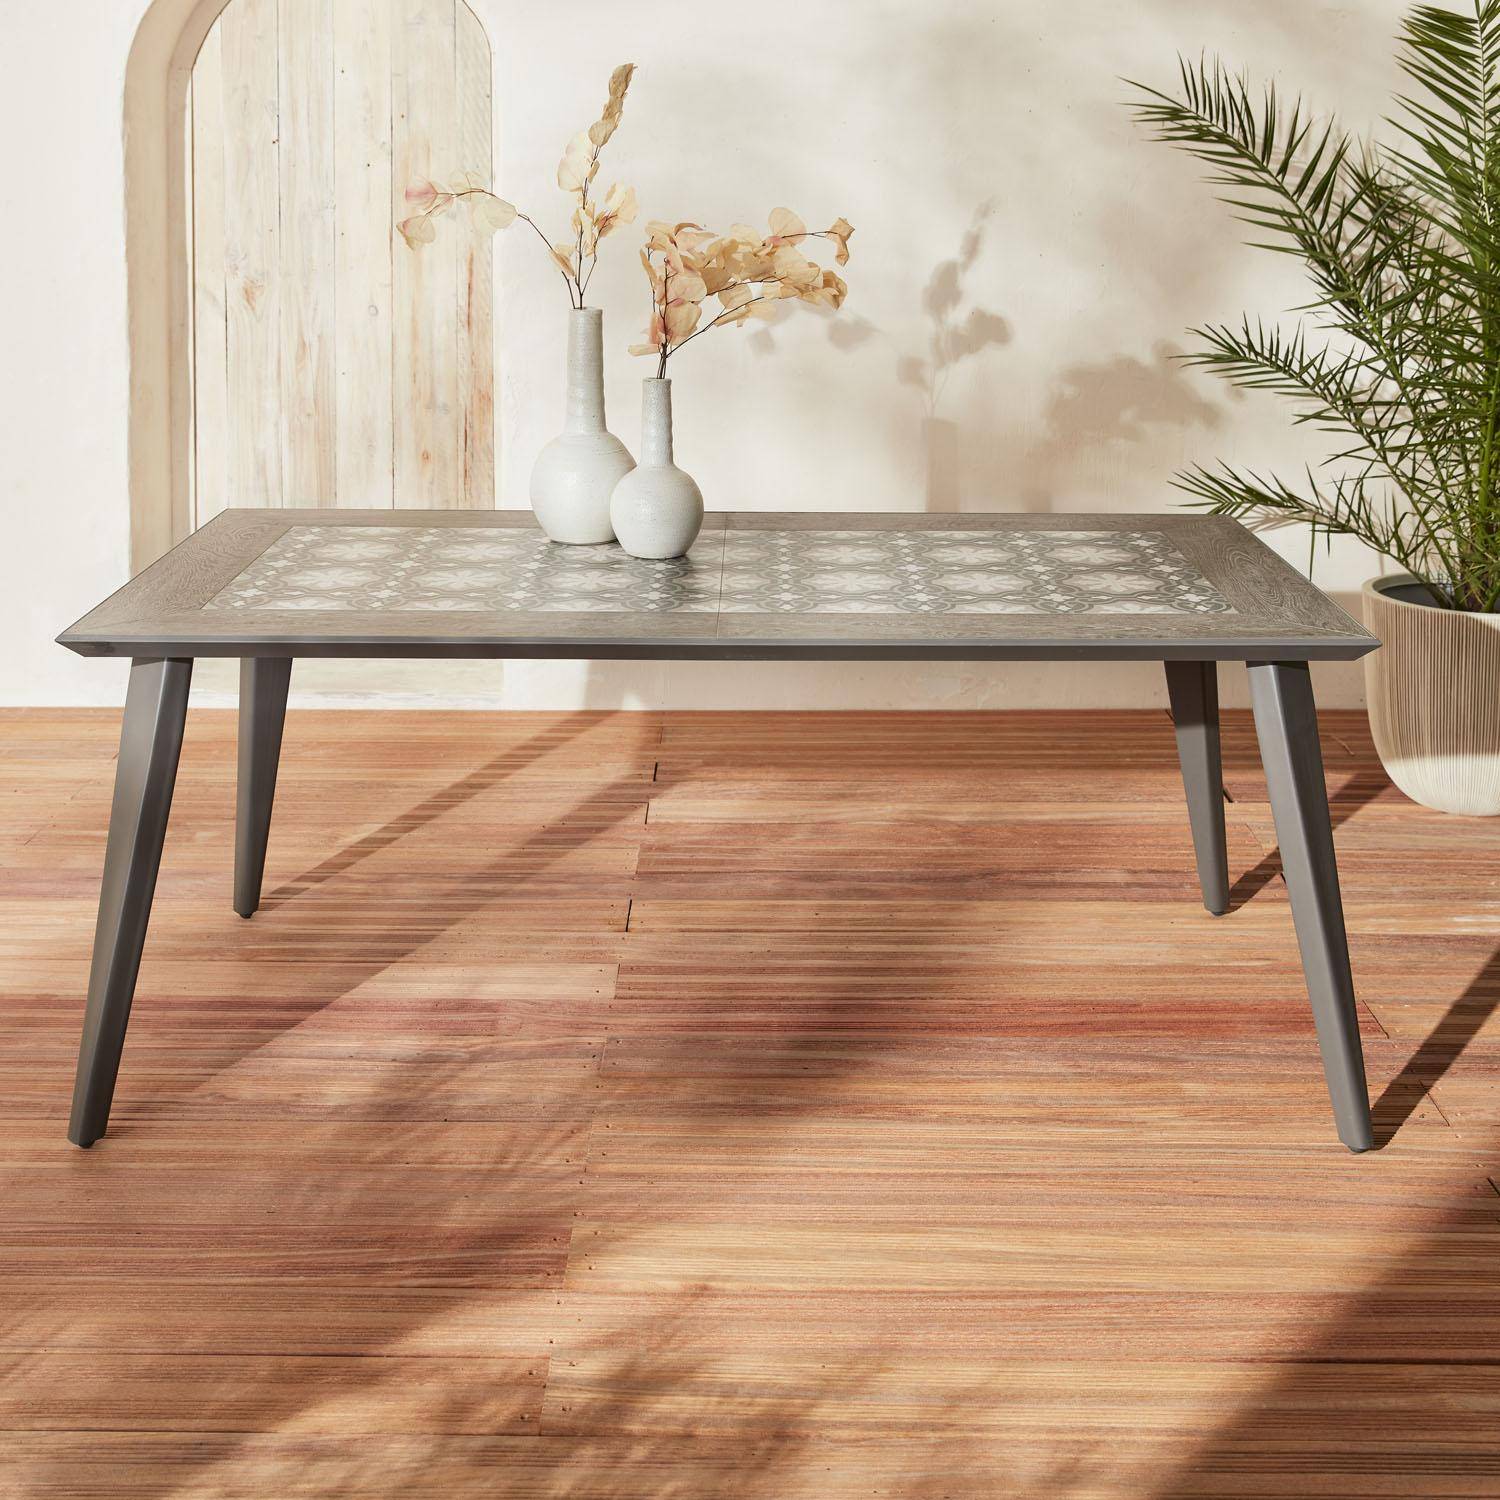 Table en métal et céramique 180 cm rectangulaire - Batam -  6 places, anthracite, Intérieur / Extérieur  Photo1